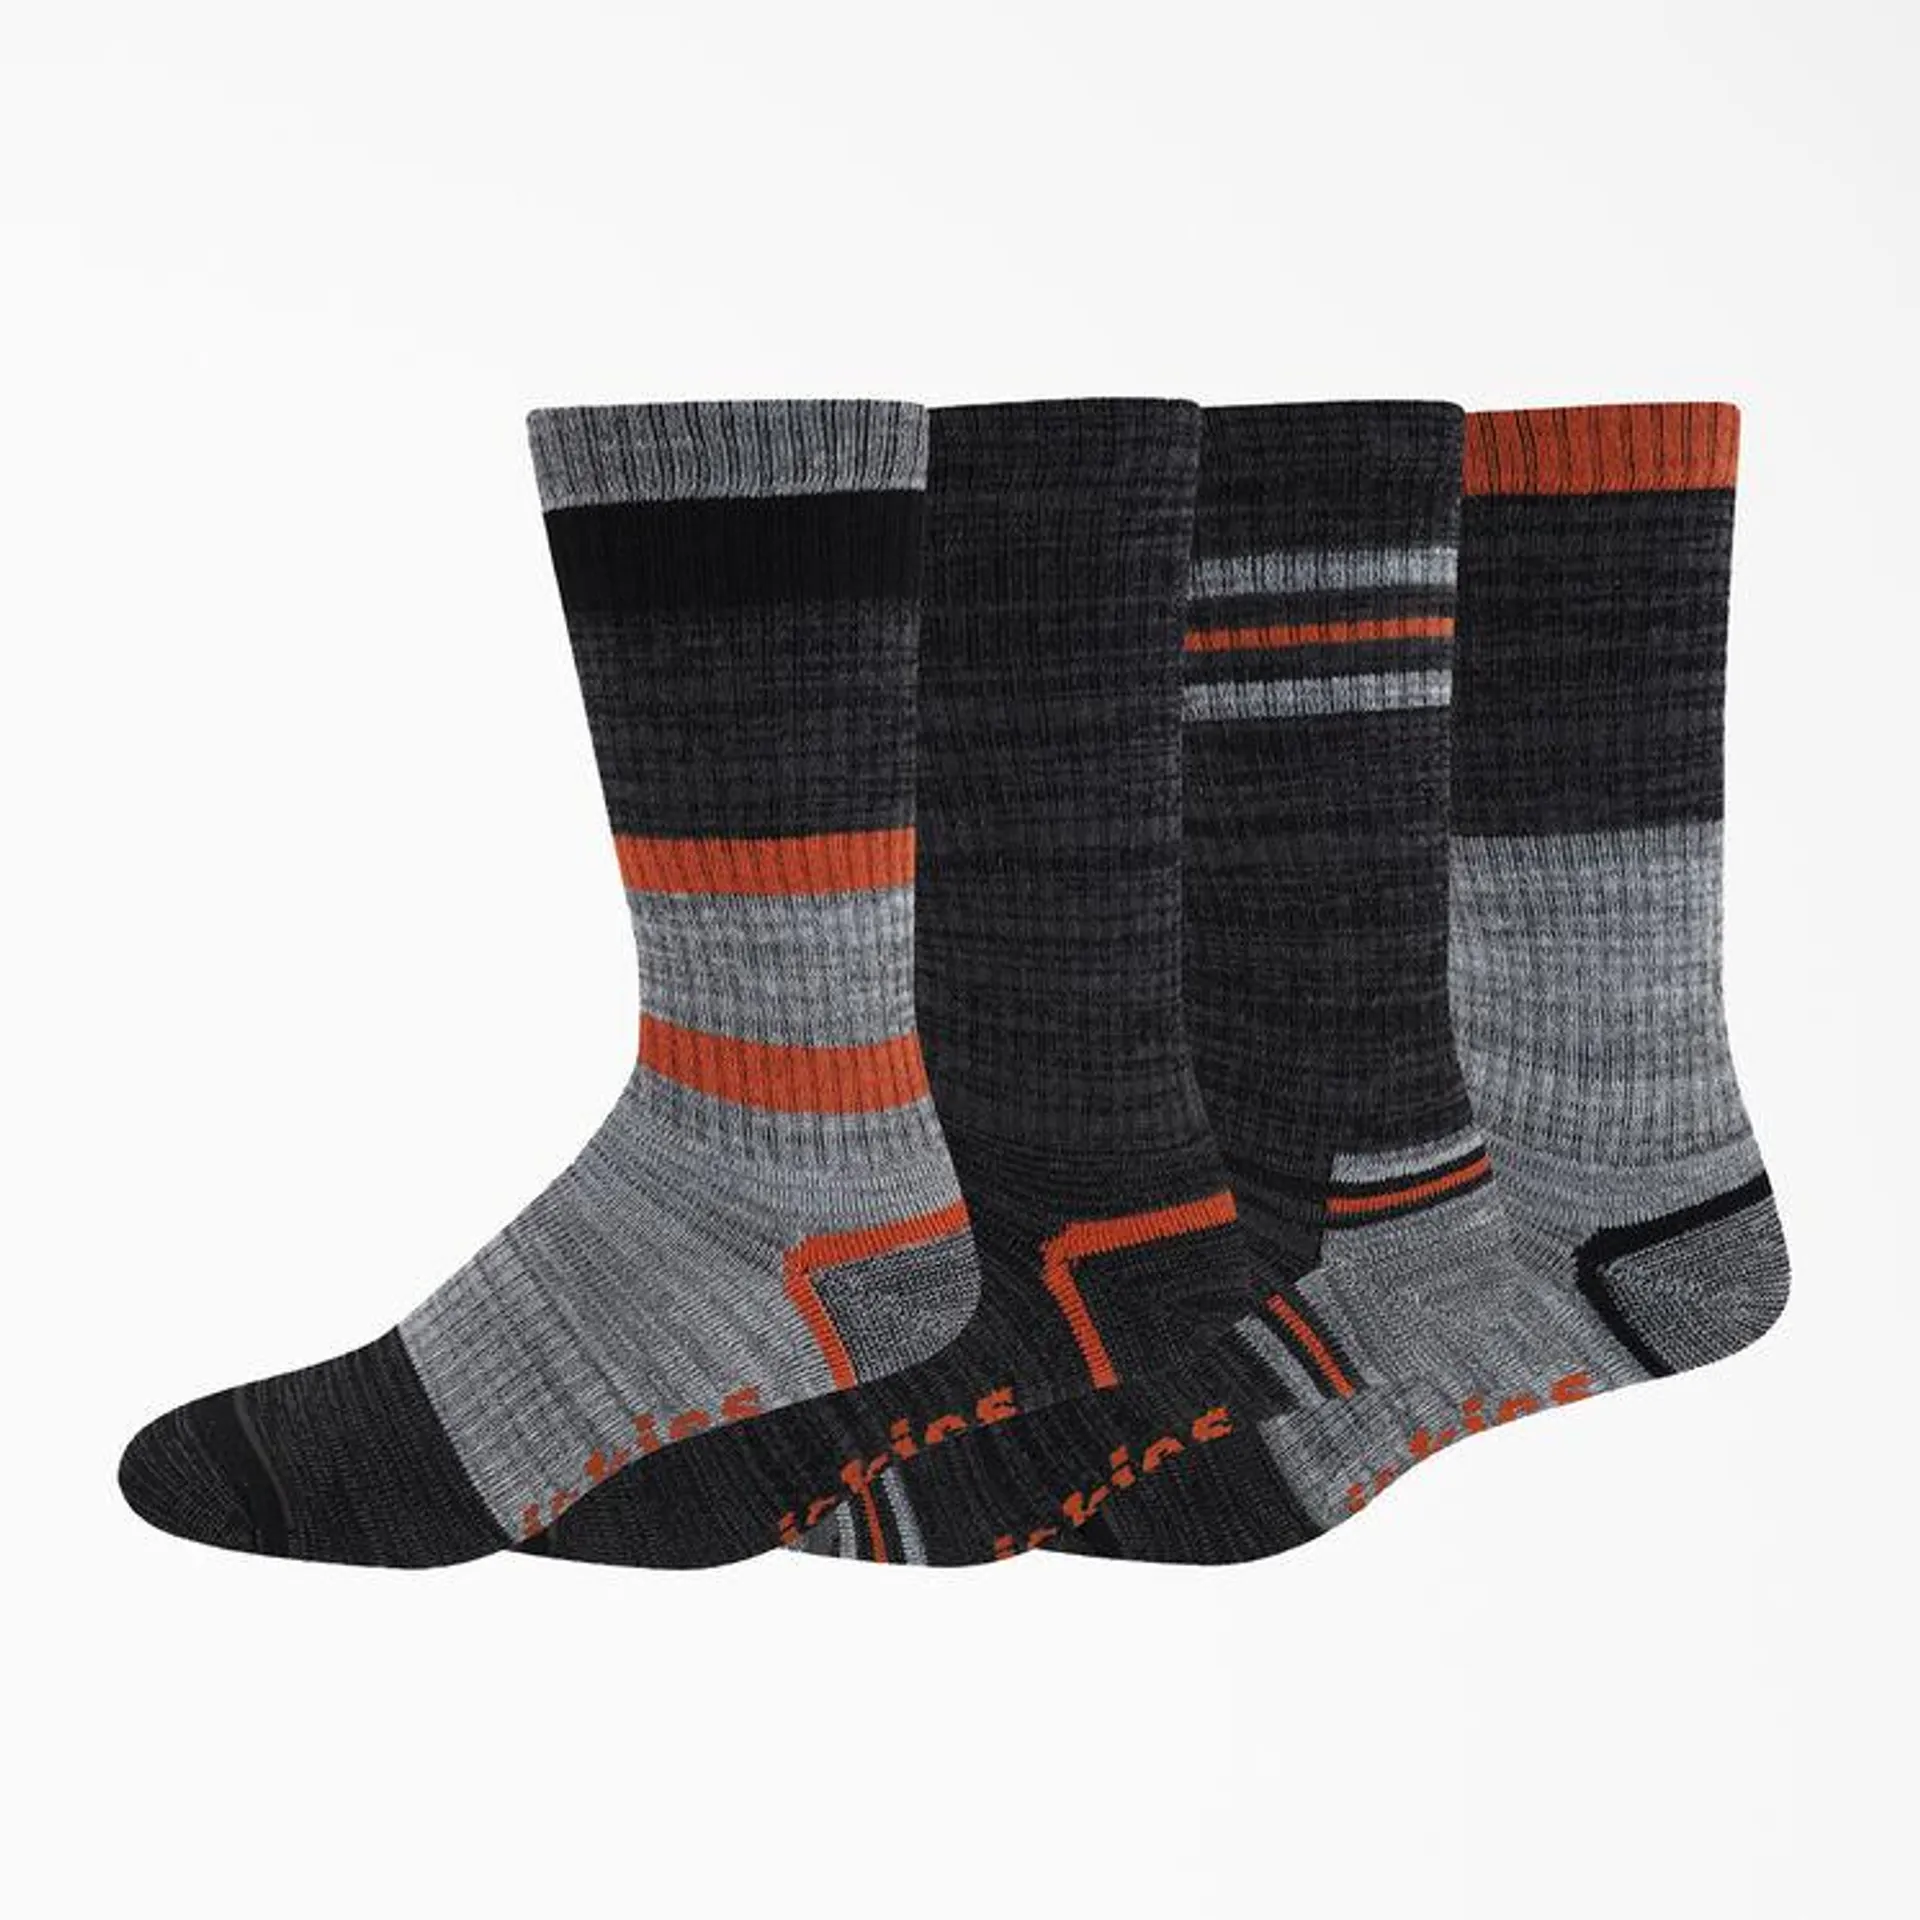 Striped Crew Socks, Size 6-12, 4-Pack, Graphite/Black/Orange